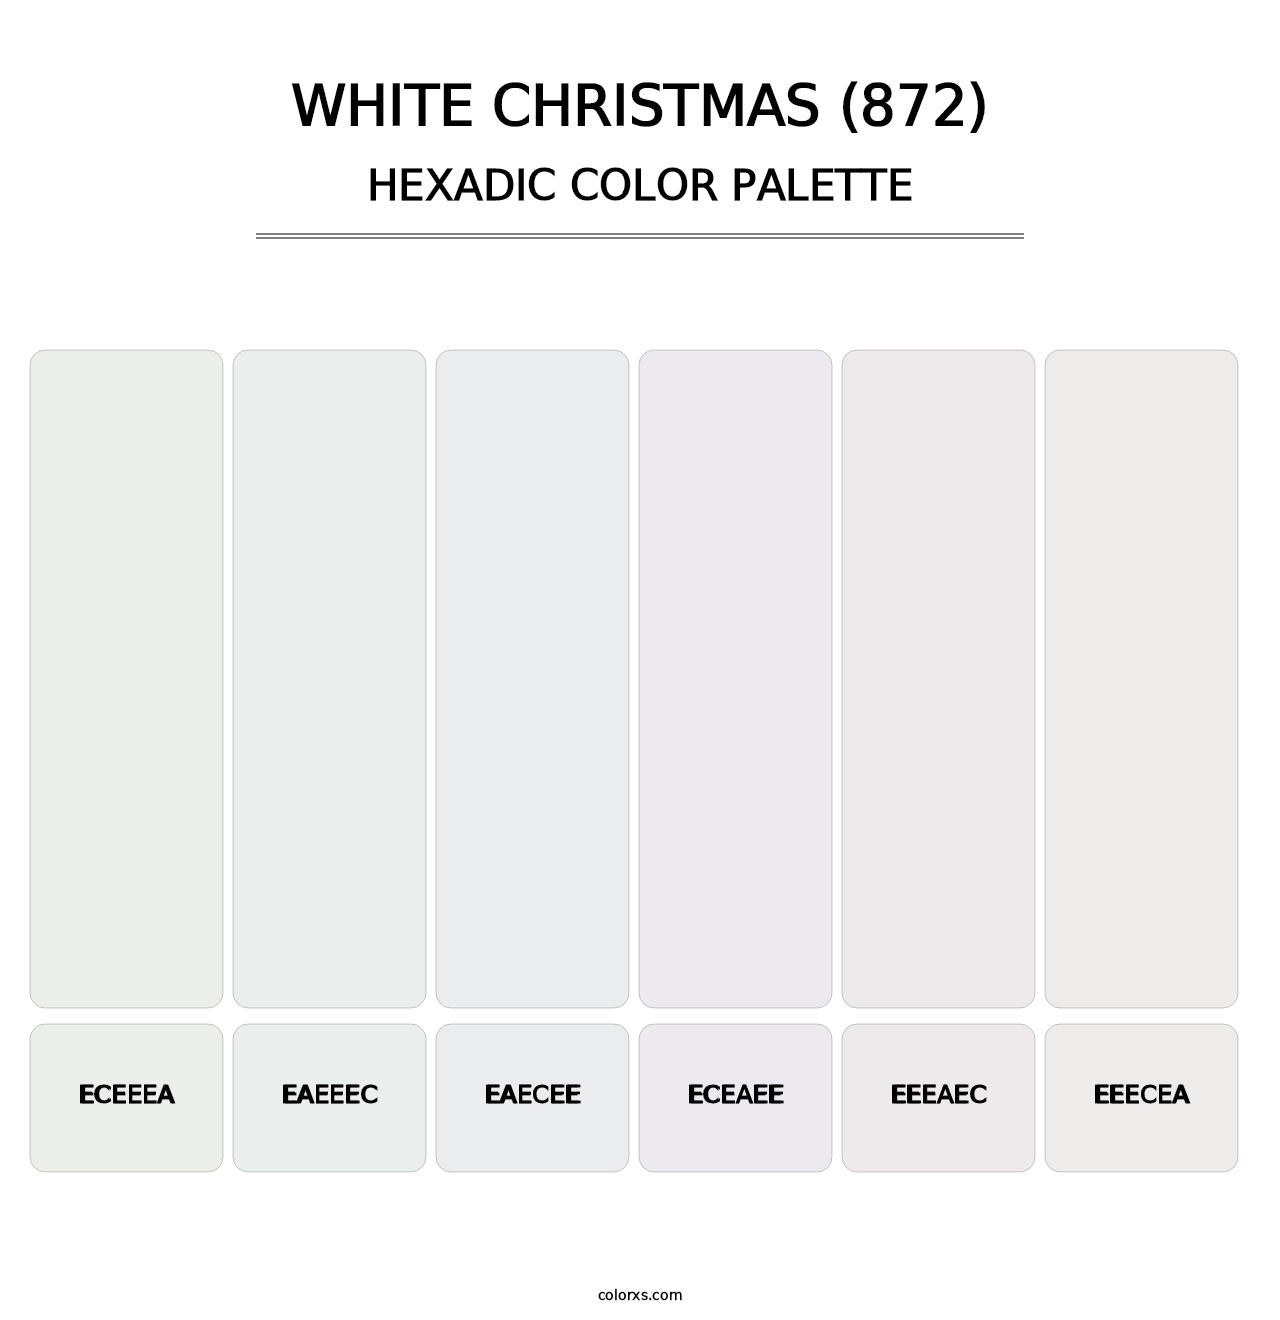 White Christmas (872) - Hexadic Color Palette